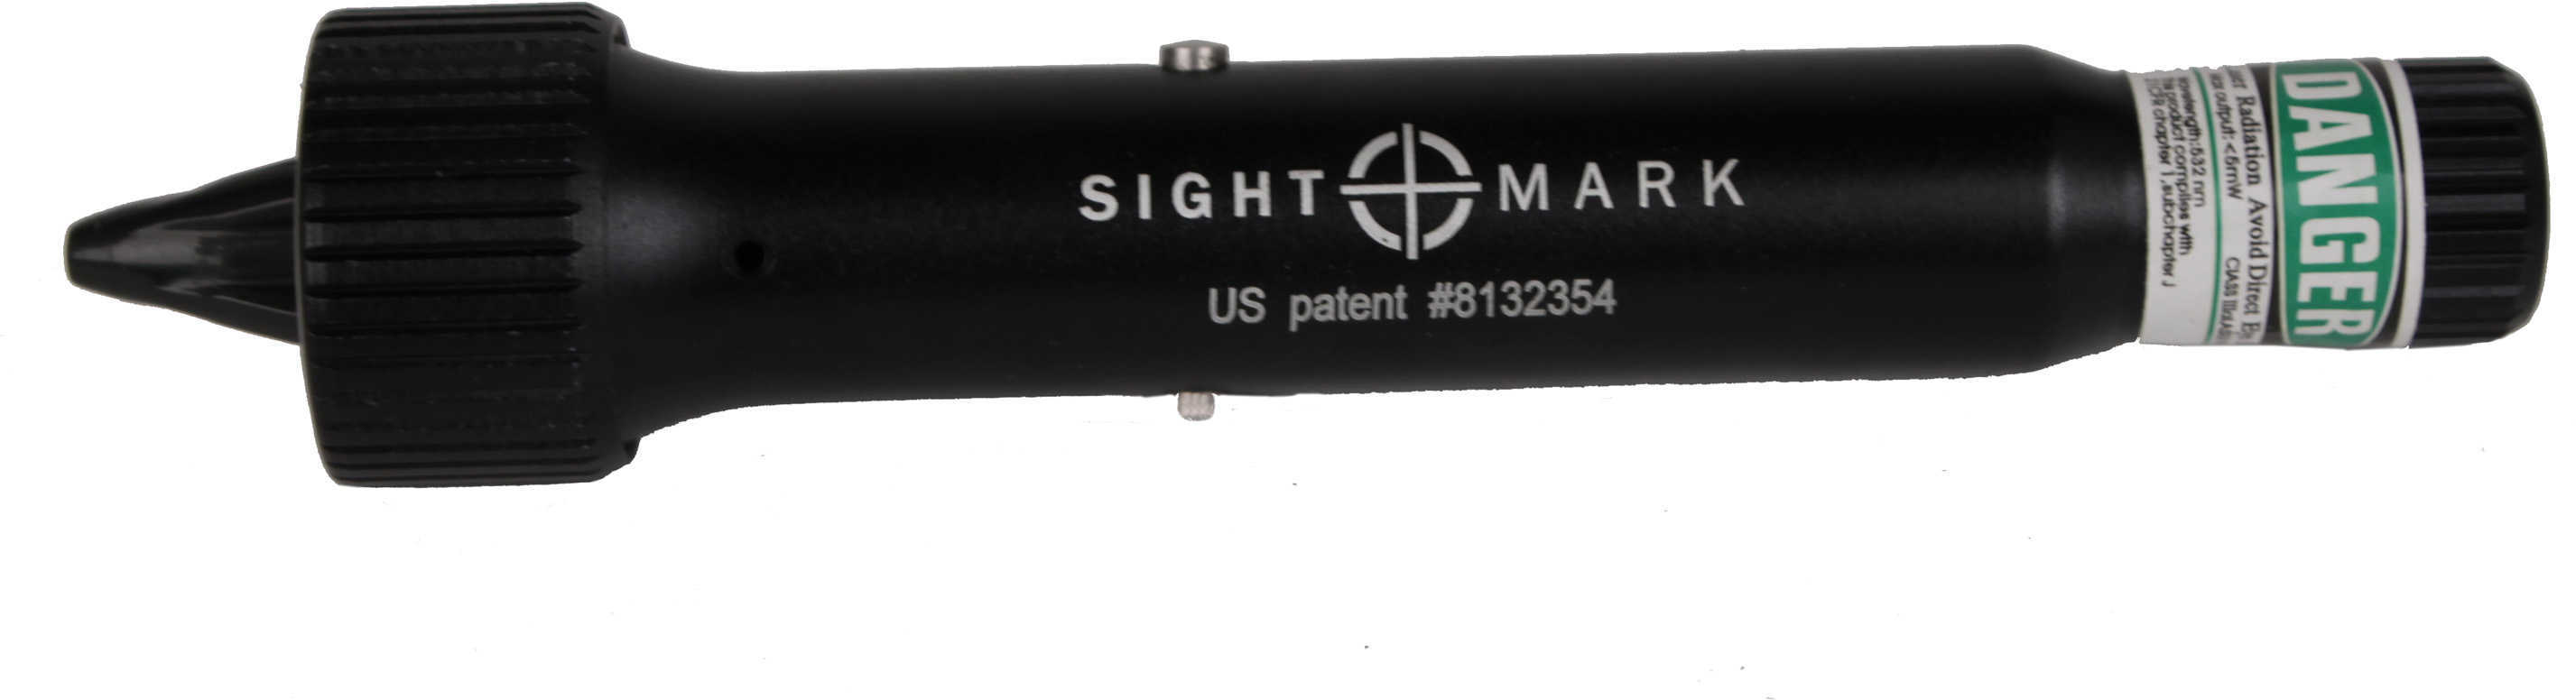 Sightmark/Landmark Sm39026 Triple Duty Universal Laser Boresight Magnetic